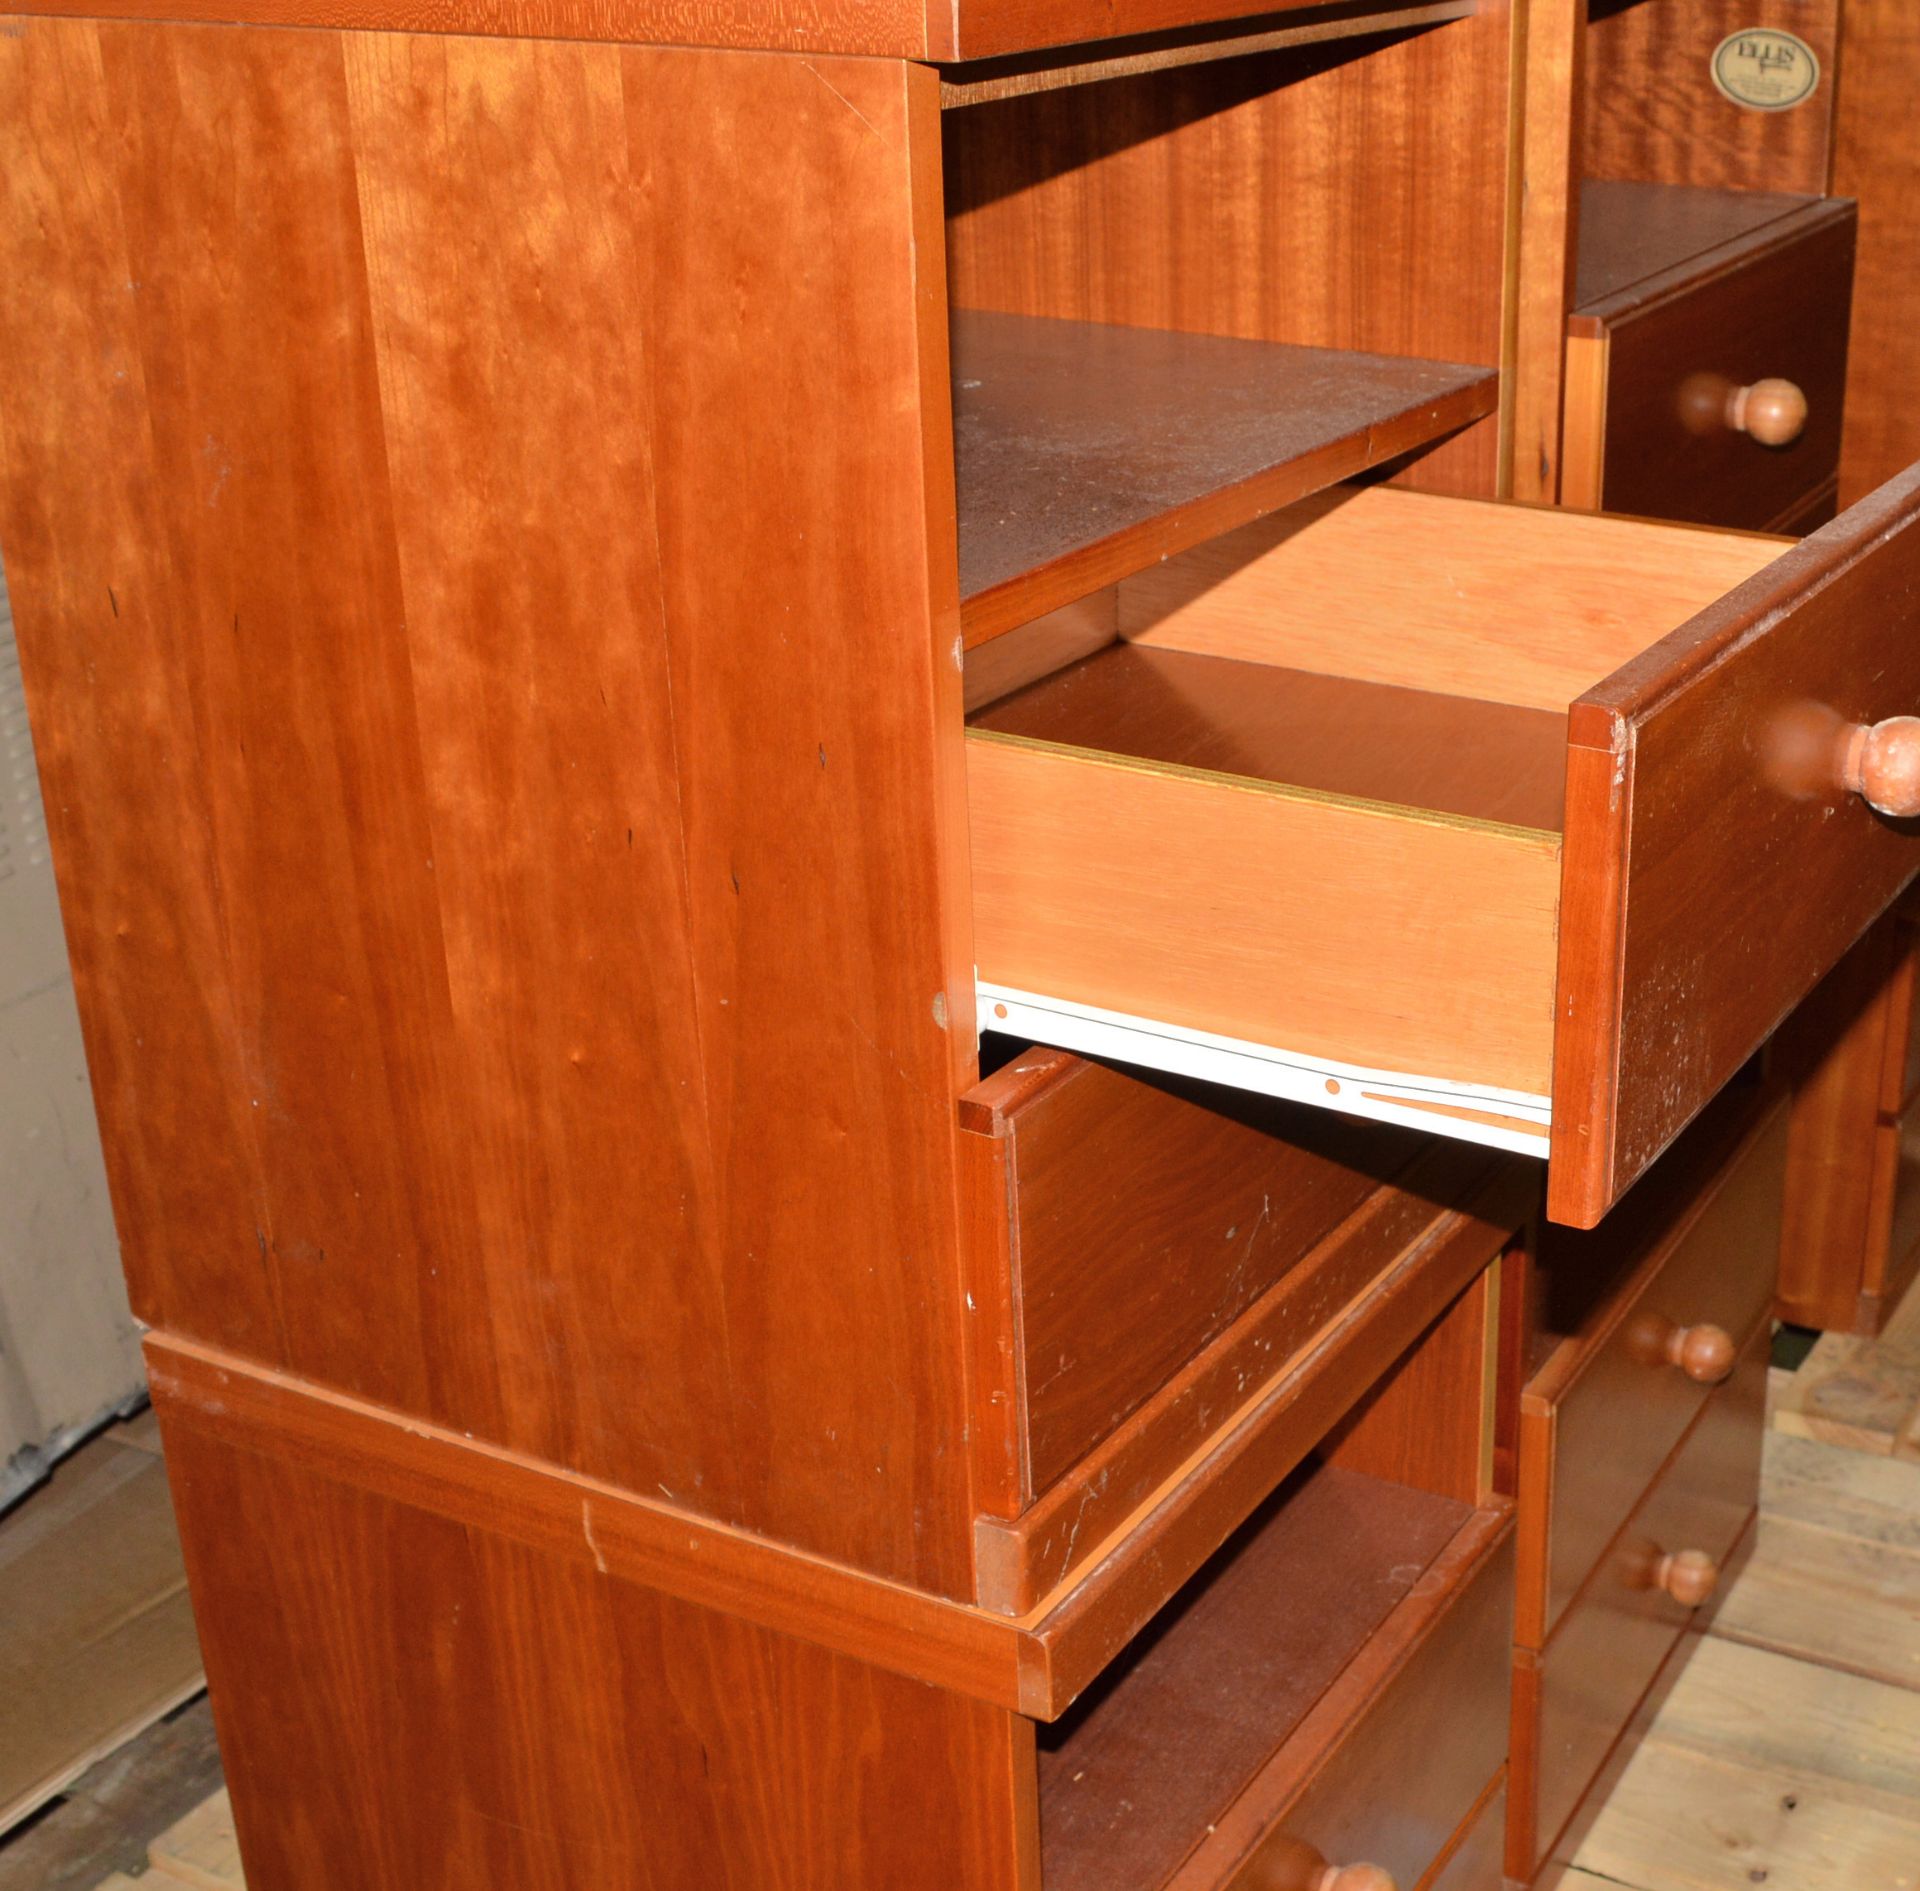 4x Bedside Cabinets - Cherry. - Bild 2 aus 2